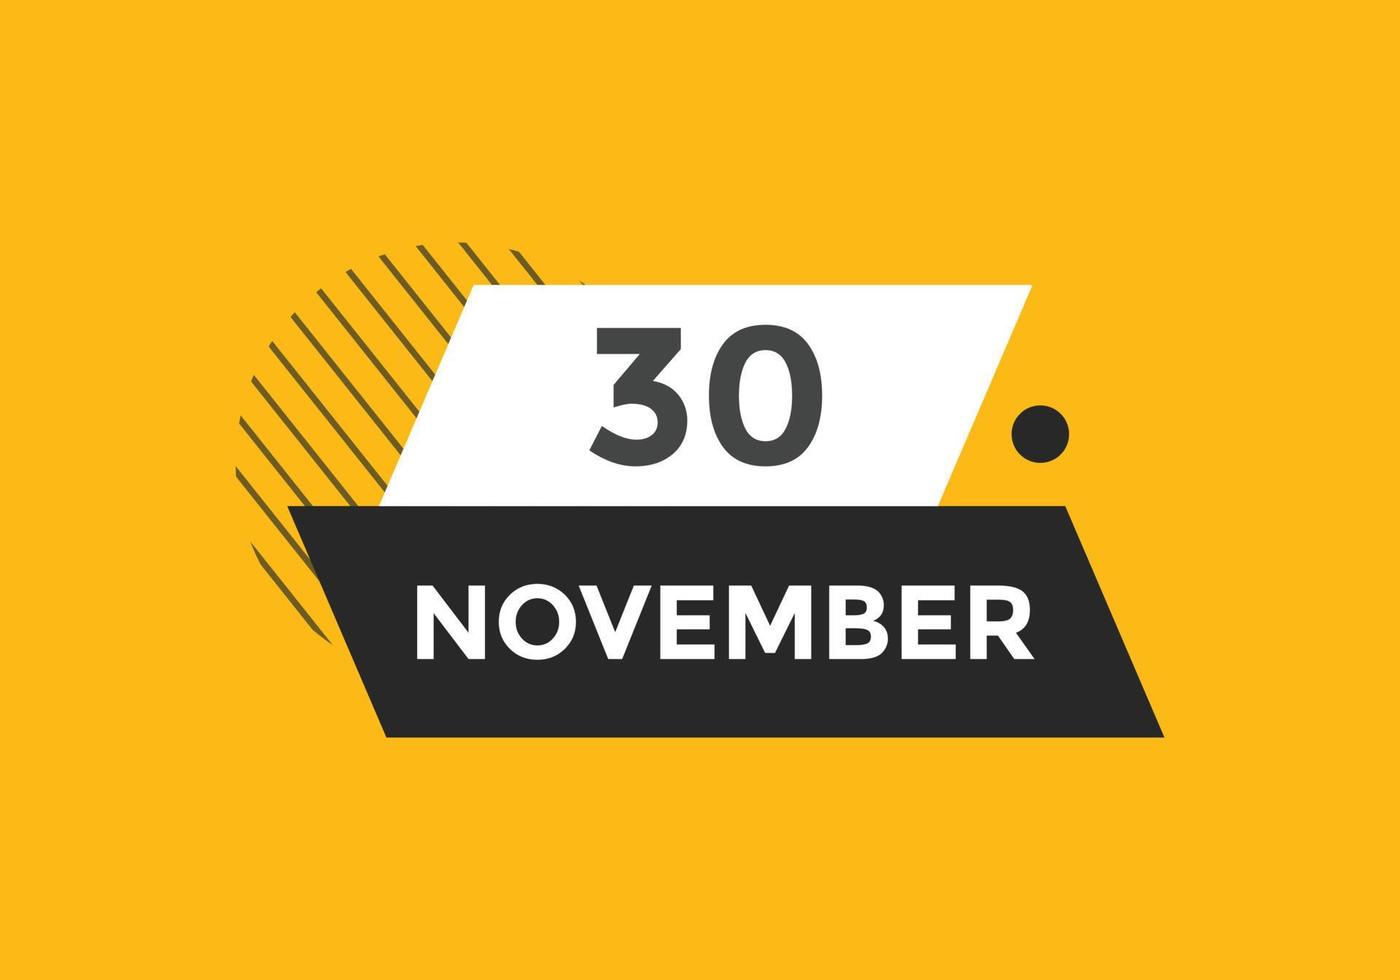 rappel du calendrier du 30 novembre. Modèle d'icône de calendrier quotidien du 30 novembre. modèle de conception d'icône calendrier 30 novembre. illustration vectorielle vecteur